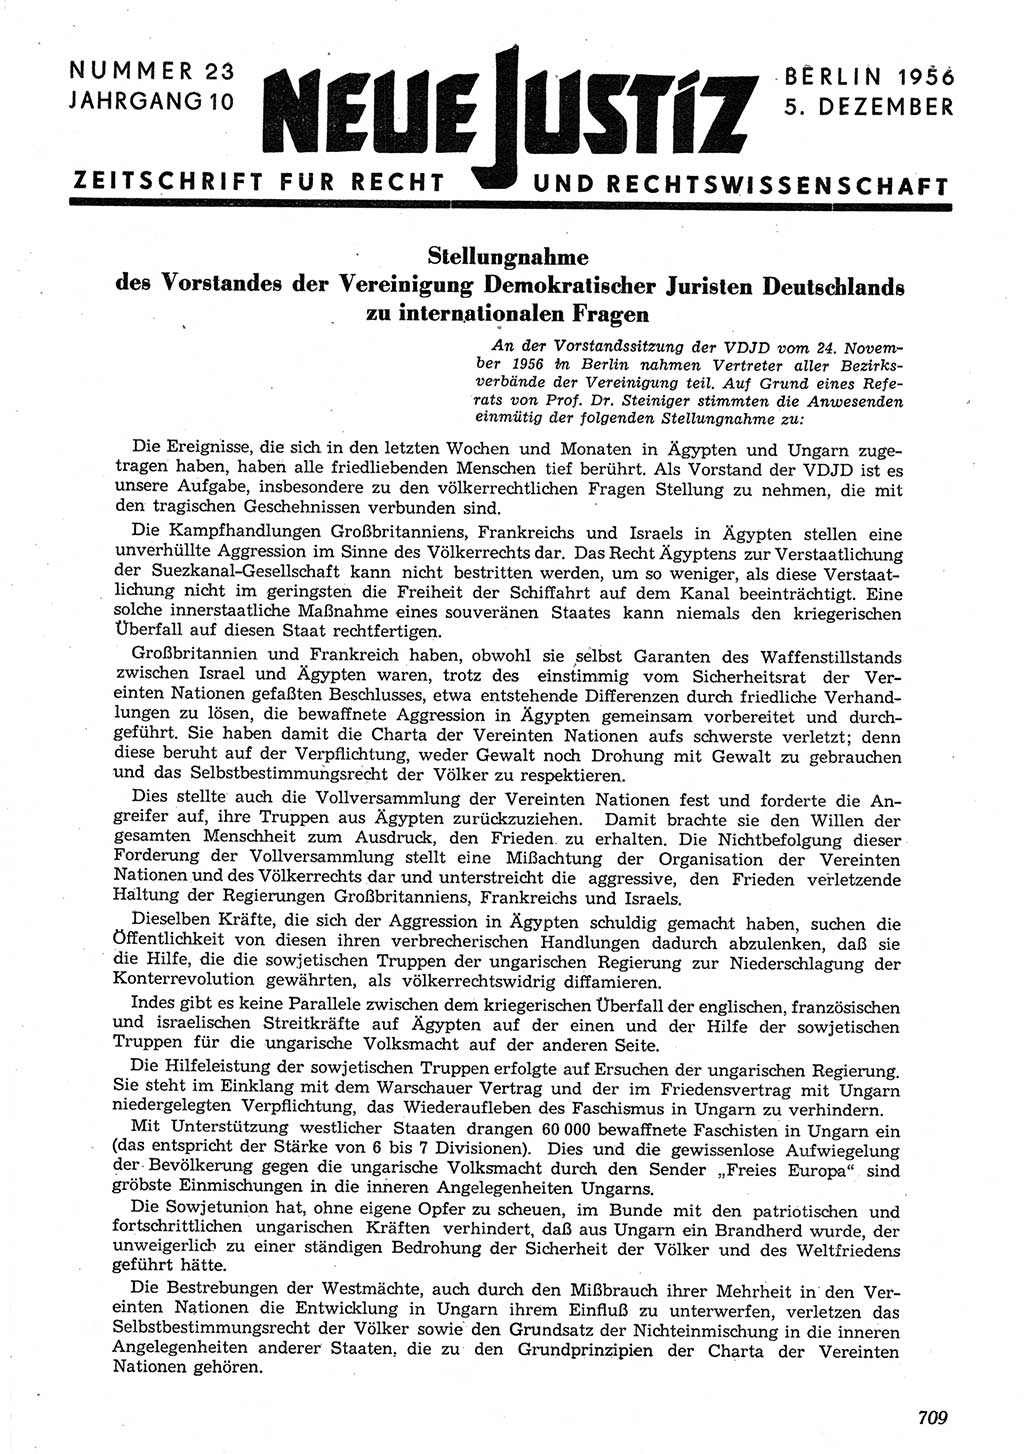 Neue Justiz (NJ), Zeitschrift für Recht und Rechtswissenschaft [Deutsche Demokratische Republik (DDR)], 10. Jahrgang 1956, Seite 709 (NJ DDR 1956, S. 709)